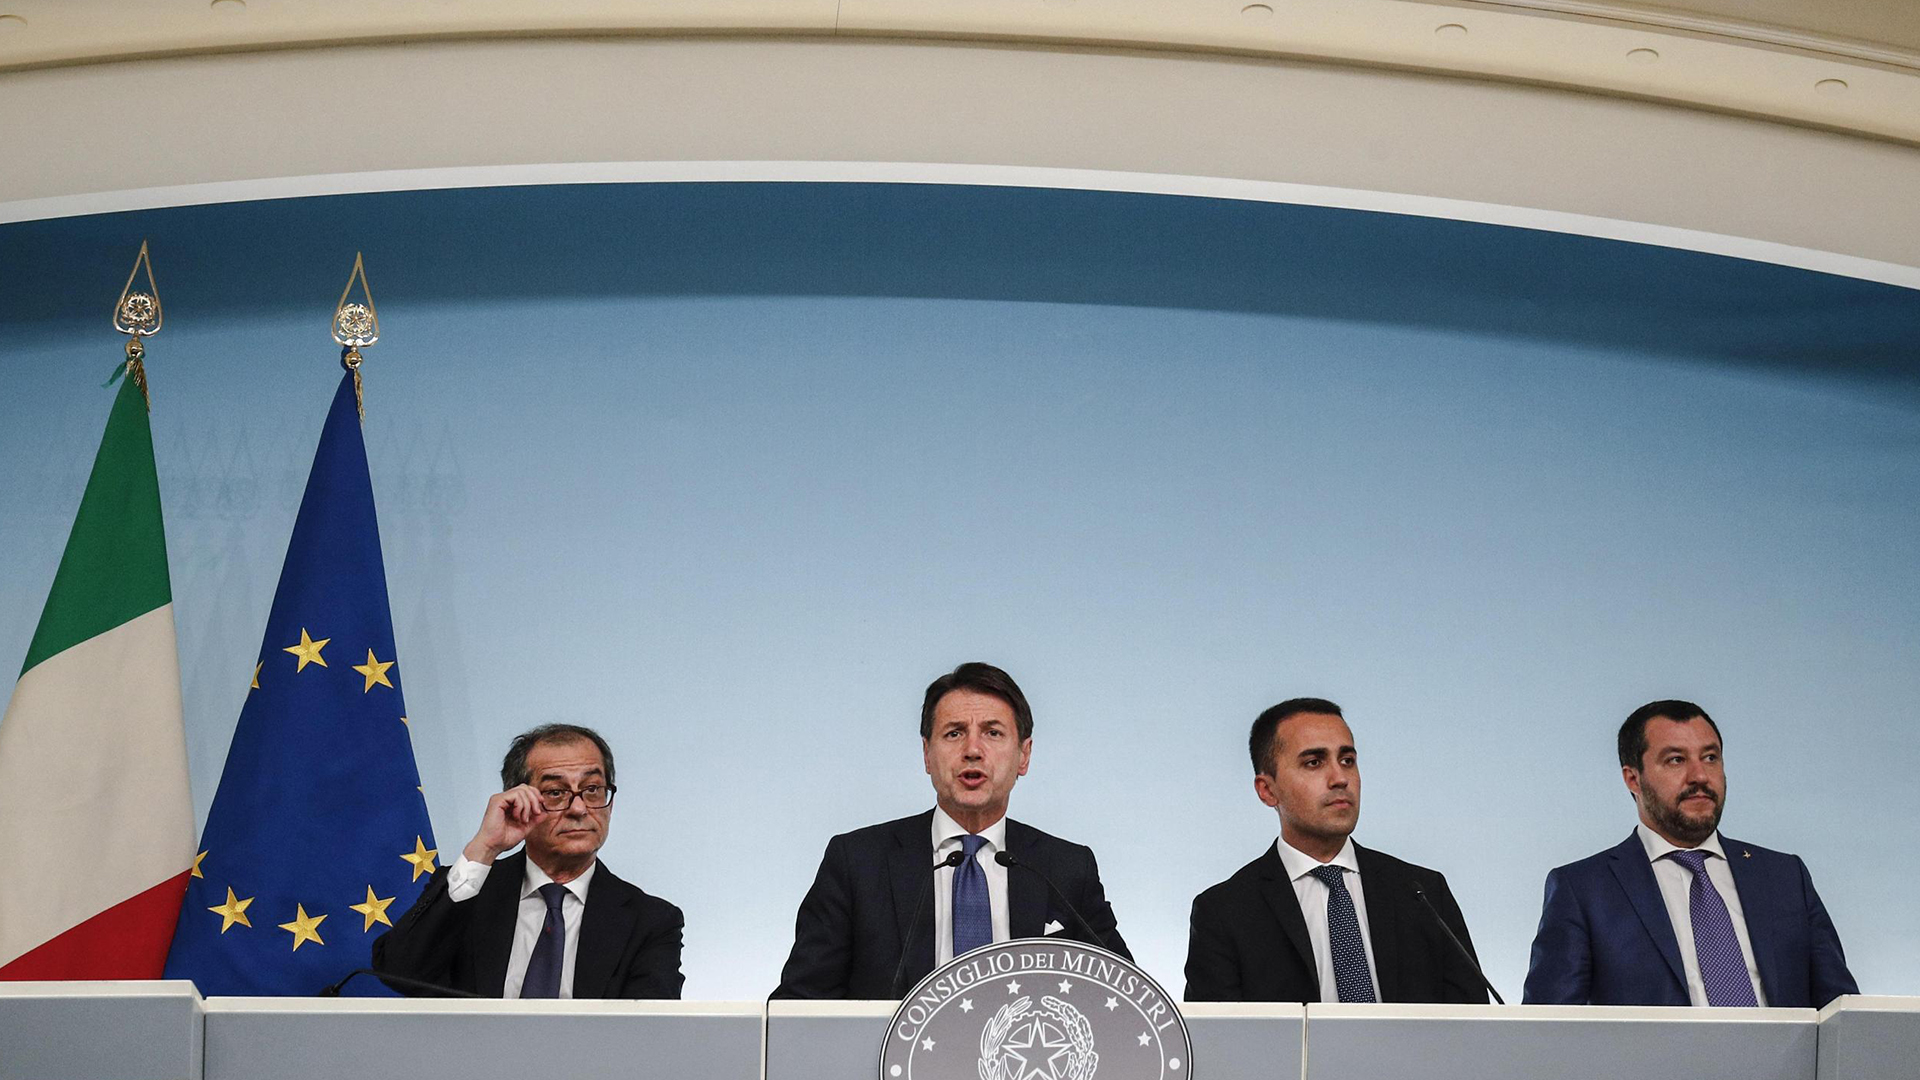 Giovanni Tria, Giuseppe Conte und Luigi Di Maio bei einer Pressekonferenz